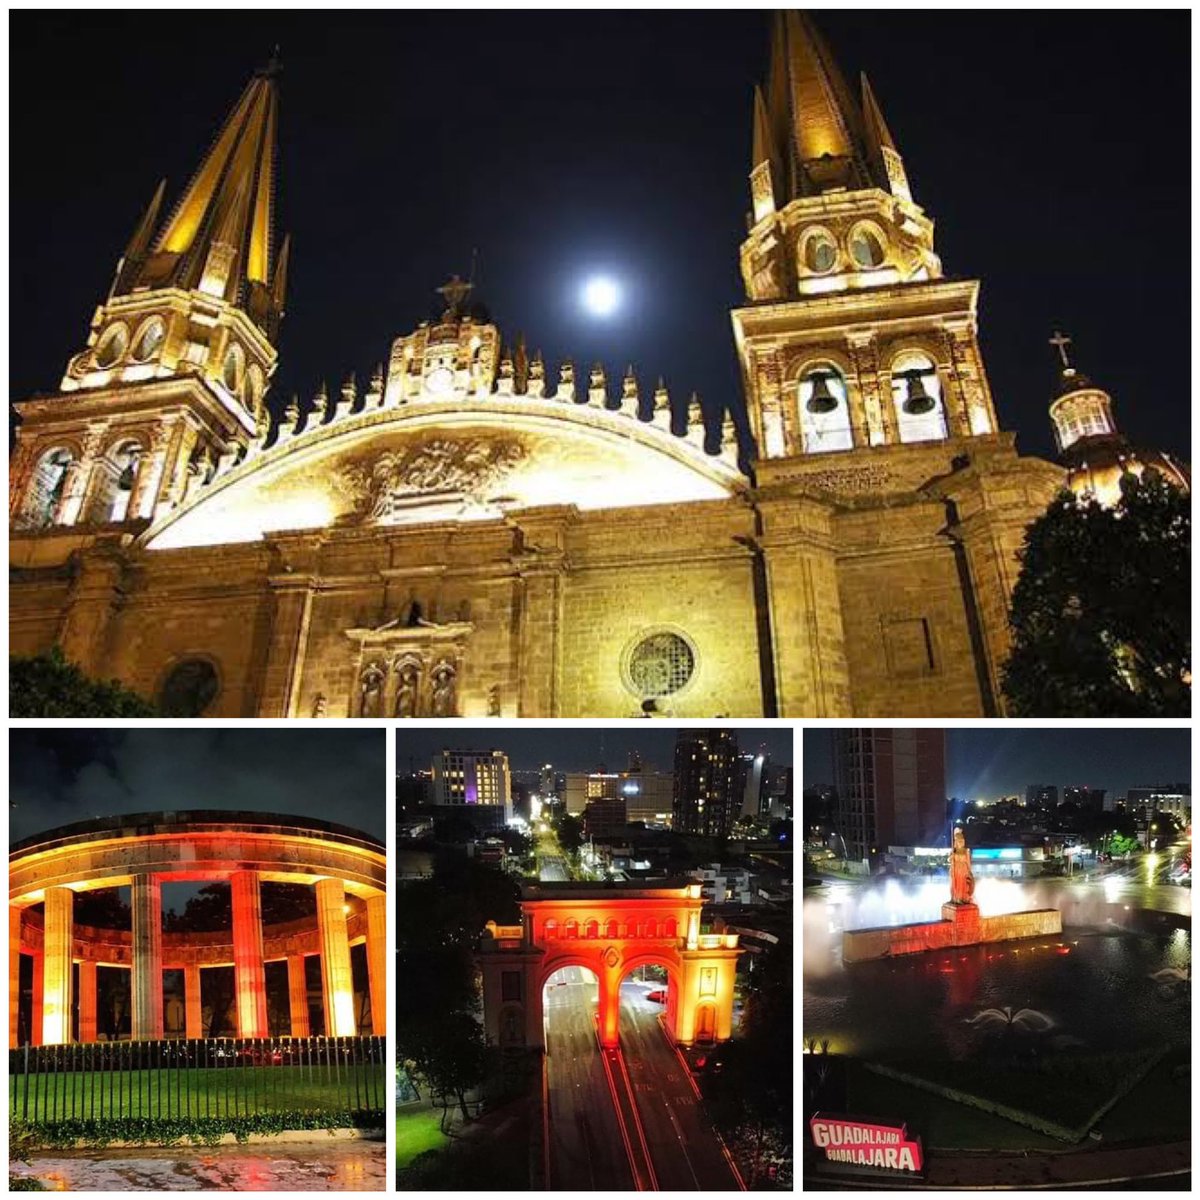 Y para “turistear” nada mejor que la hermosa Guadalajara 🥰
#DiaMundialDelTurismo